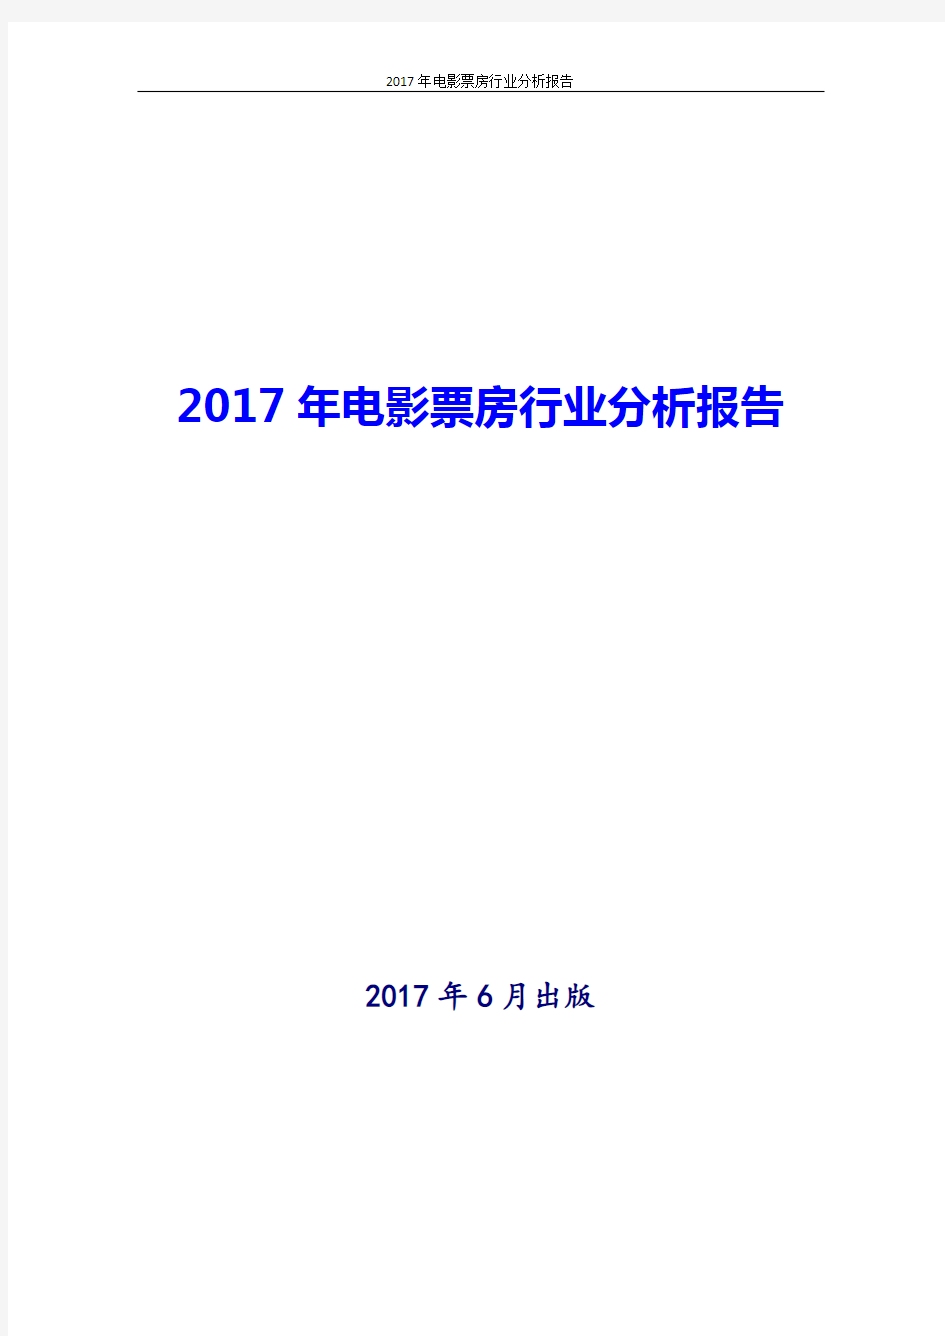 中国电影票房行业分析报告2017